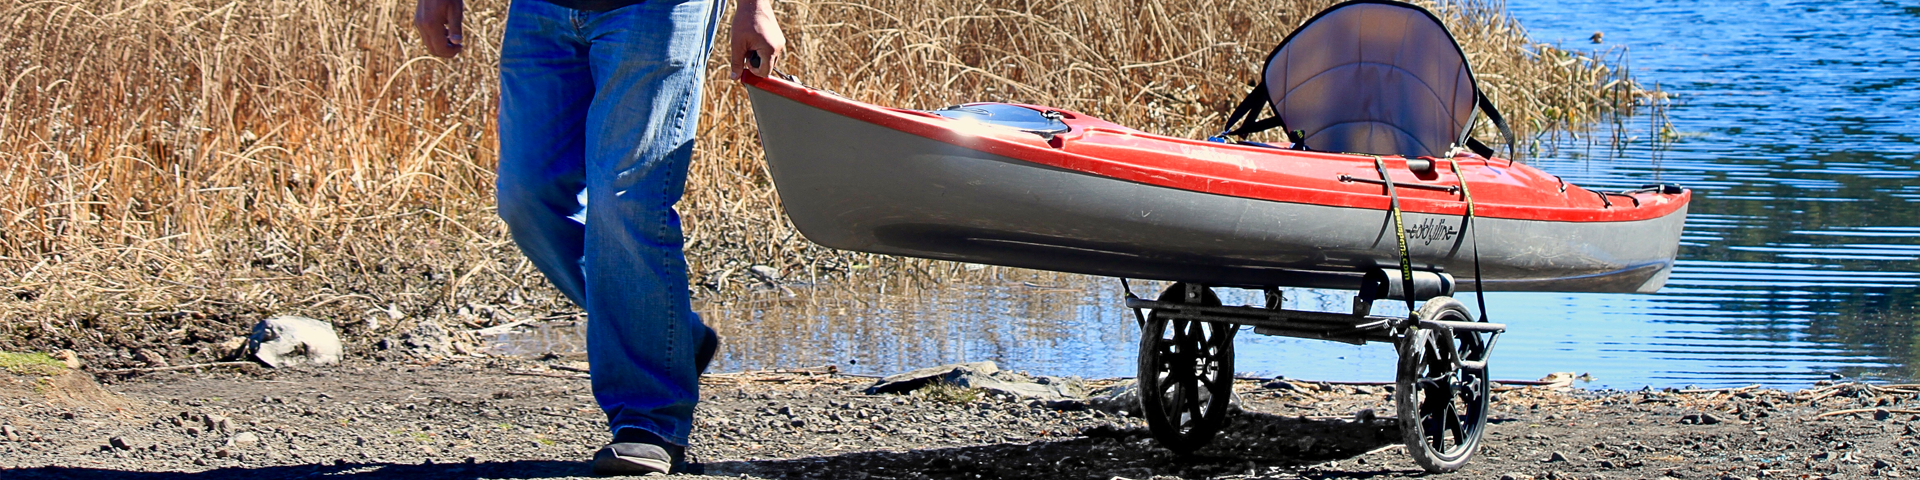 Suspenz, All-Terrain Super Duty Airless Cart [Kayak Angler Buyer's